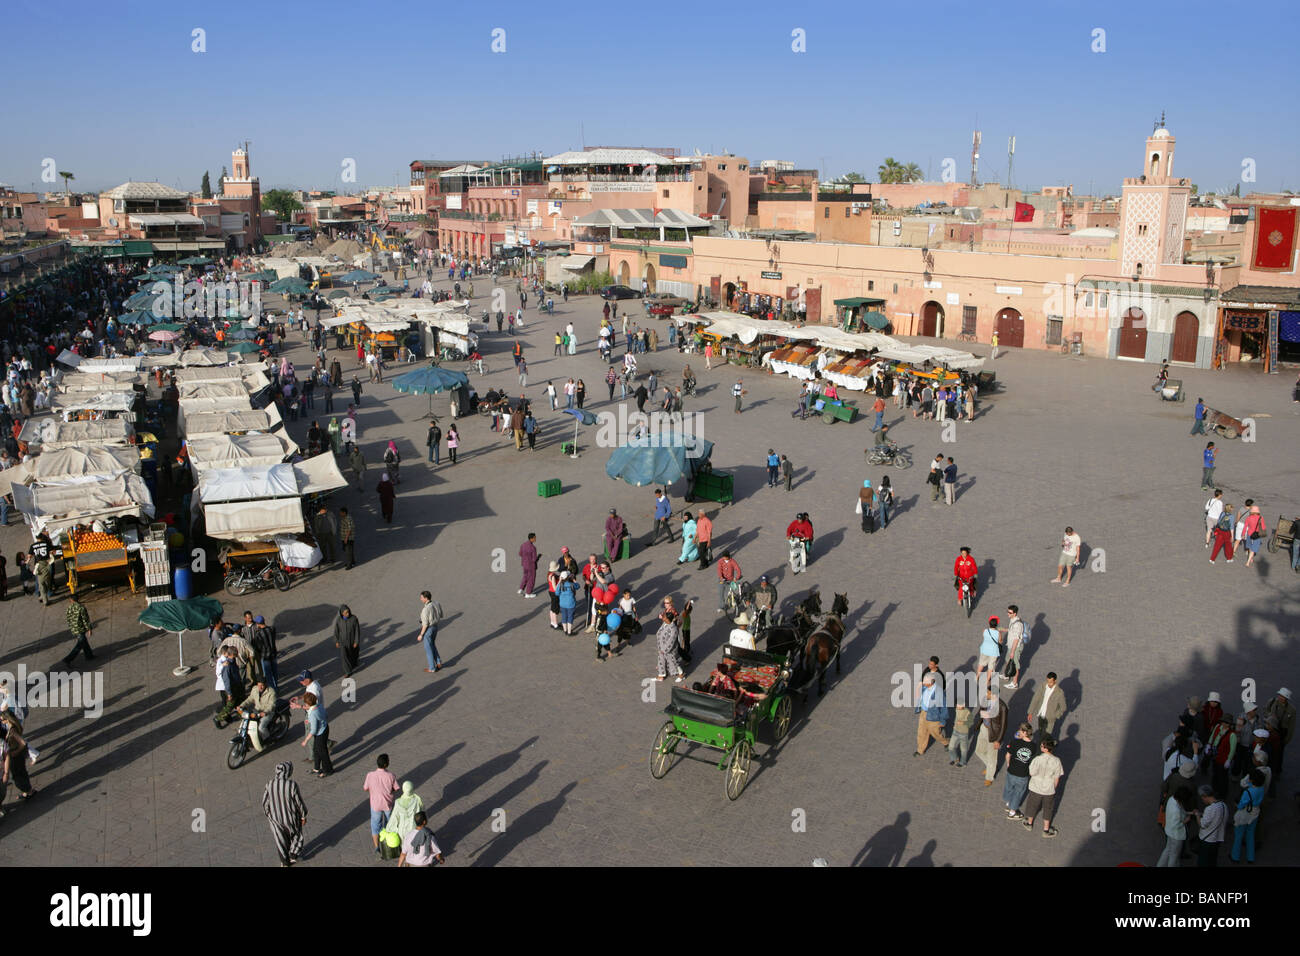 Mit Blick auf Djemaa el-Fna tagsüber, Marrakesch, Marokko Stockfoto